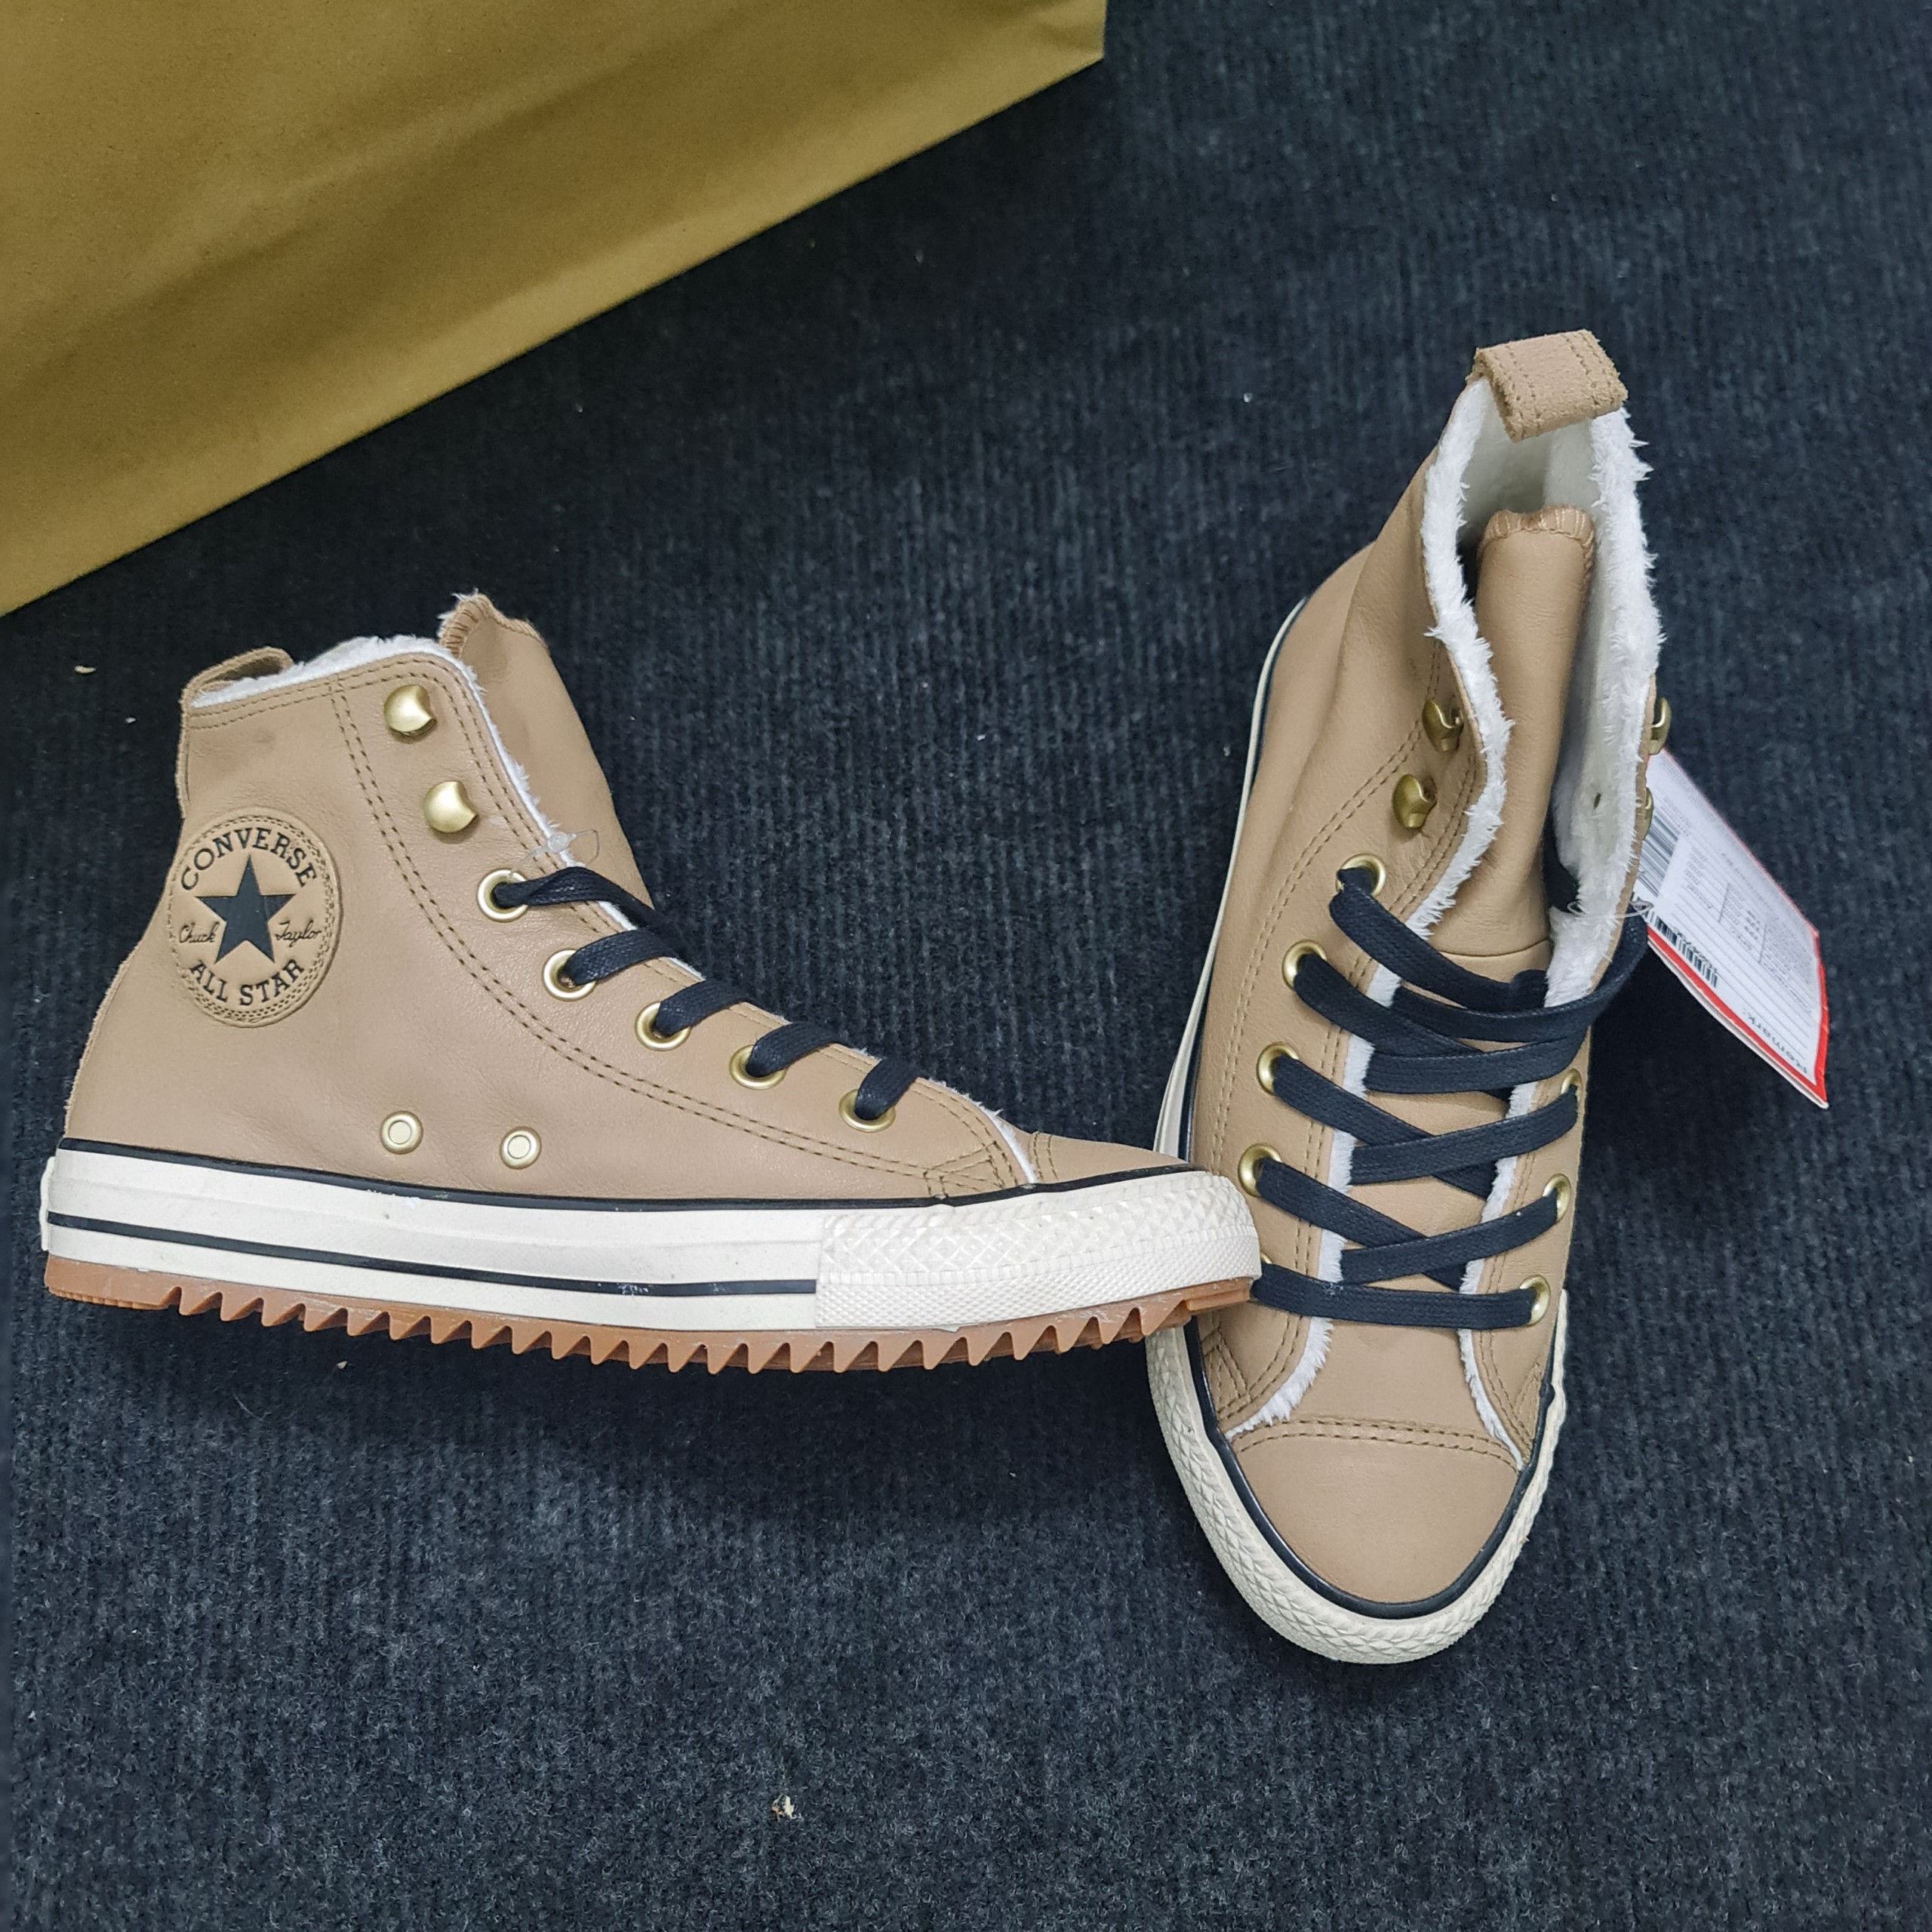 Sample shoes  Giày Converse da thuộc lót lông nữ màu cafe size 37.5